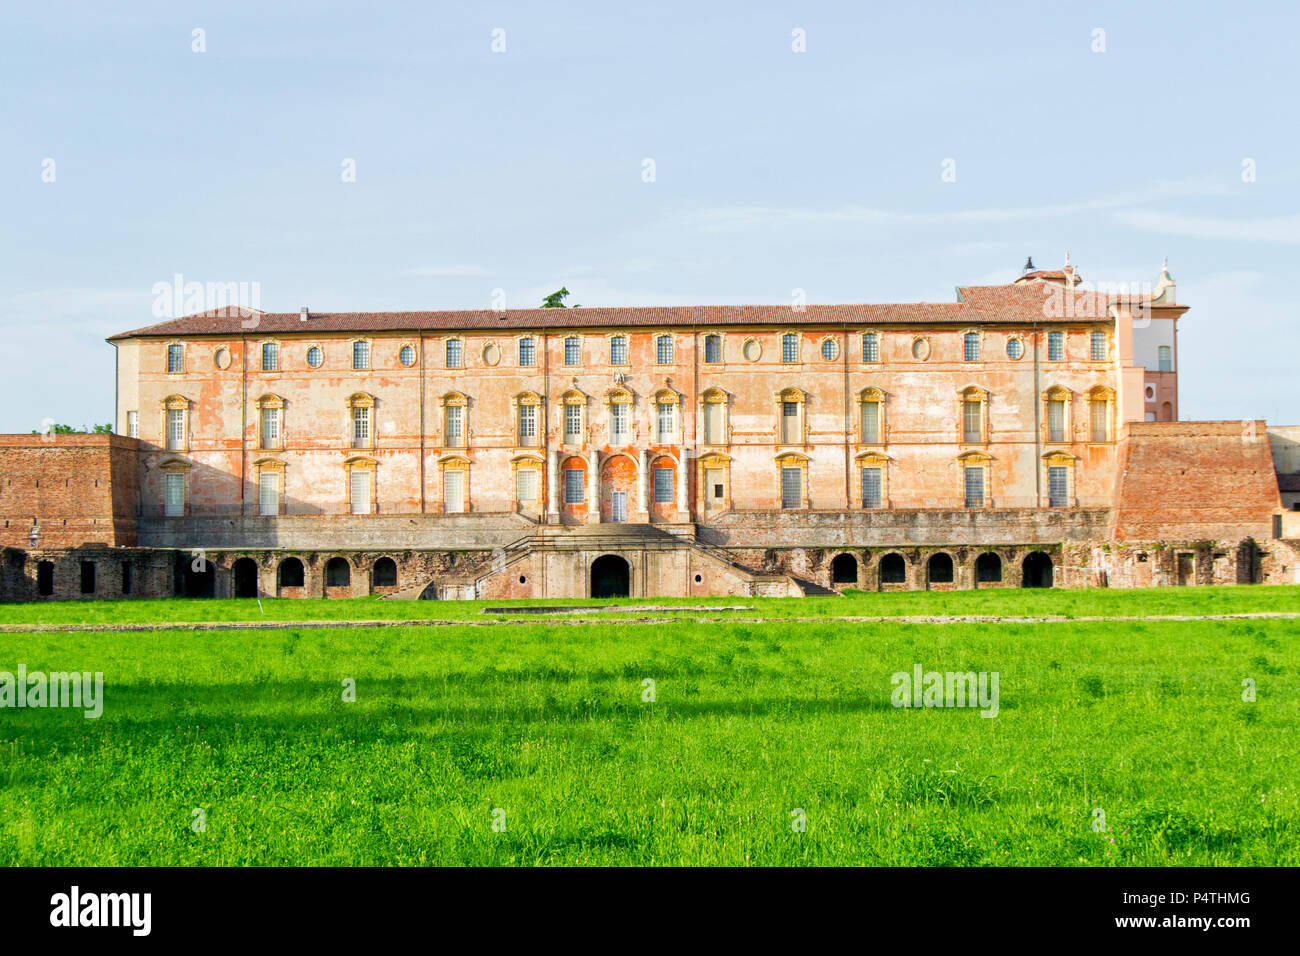 Palais ducal Estense à Sassuolo, près de Modène, Italie. Bâtiment monumental historique Banque D'Images